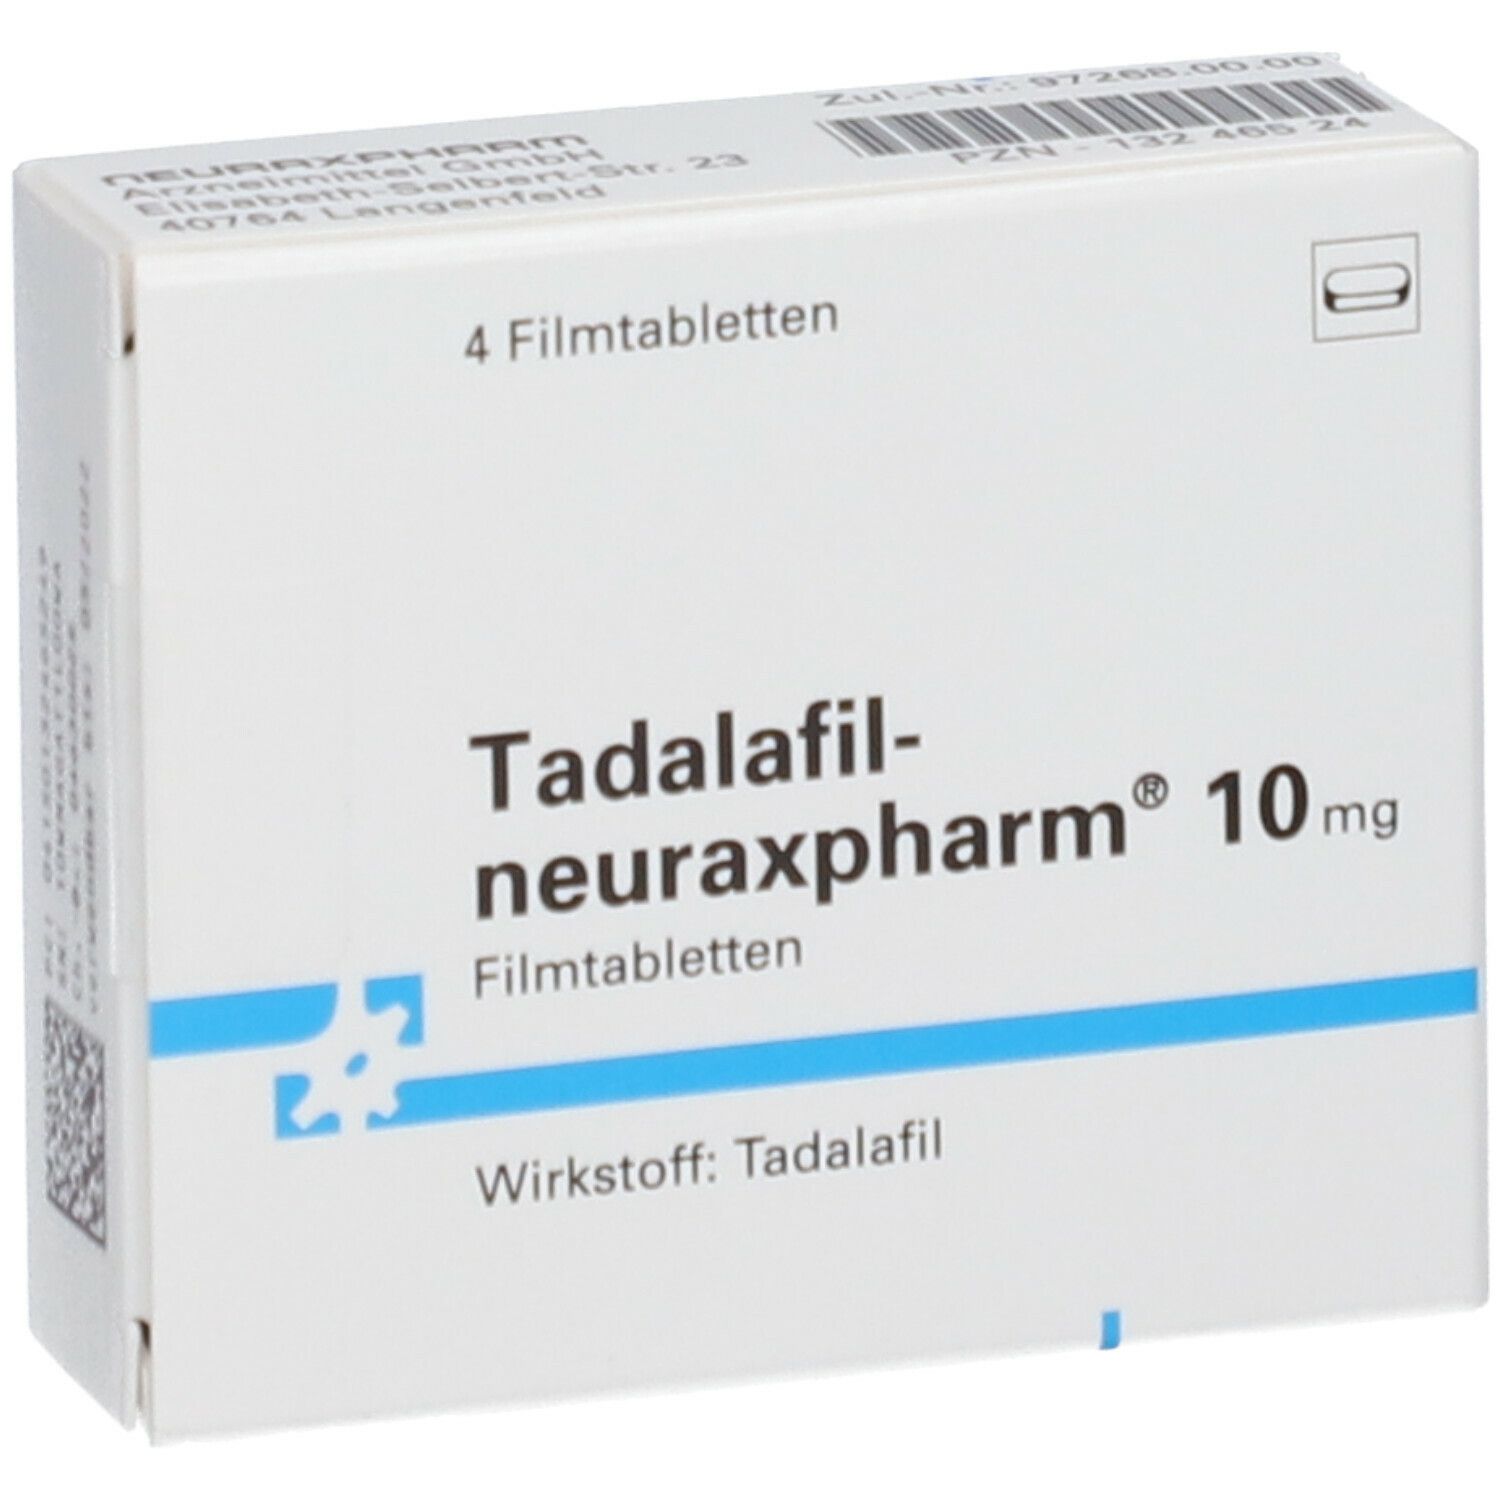 Tadalafil-neuraxpharm® 10 mg